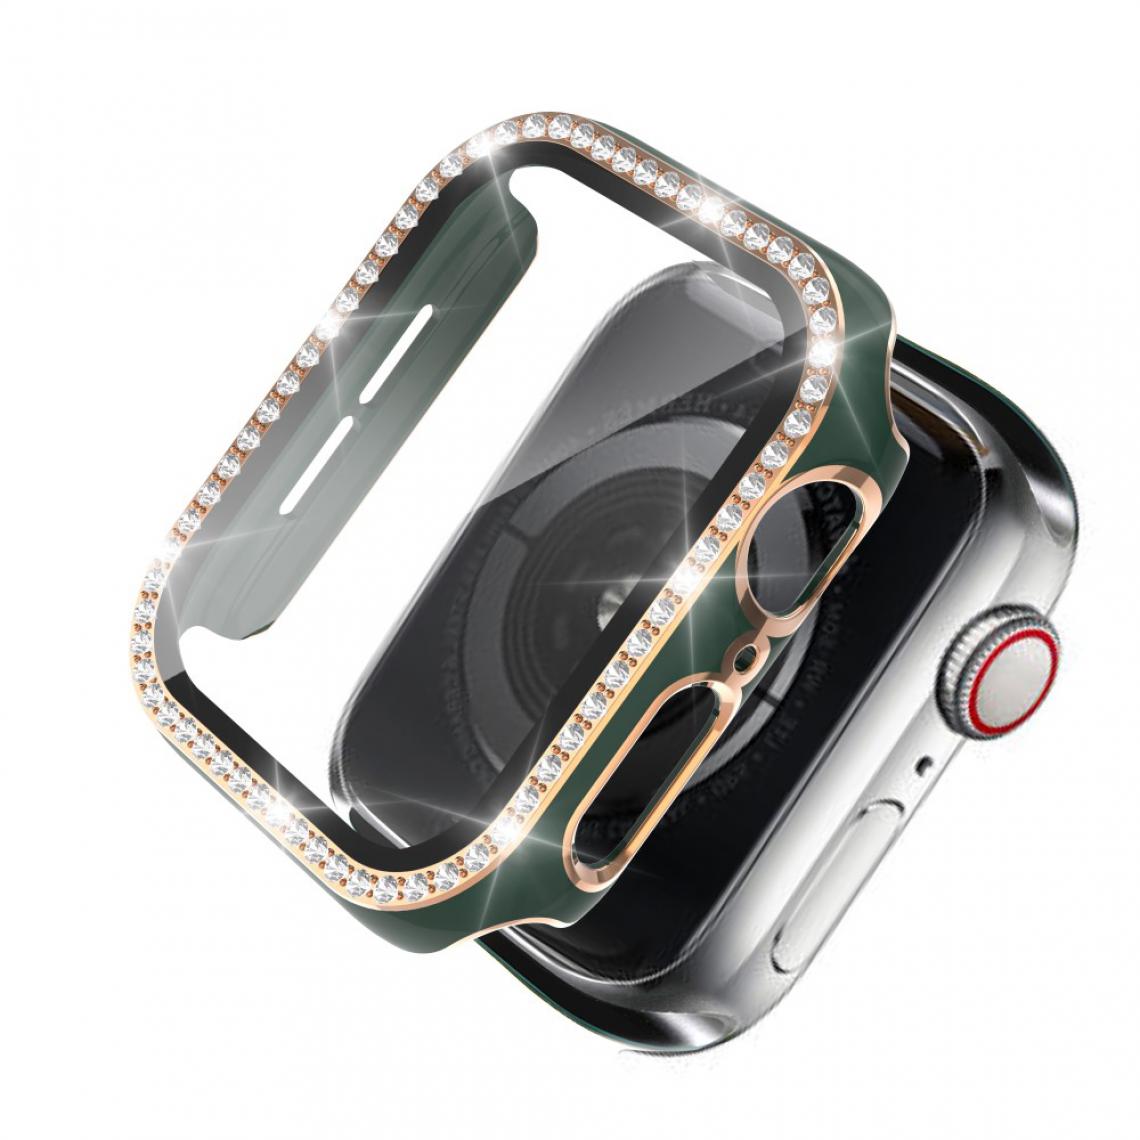 Other - Coque en TPU Strass en cristal de galvanoplastie bicolore Vert/Or pour votre Apple Watch 1/2/3 42mm - Accessoires bracelet connecté